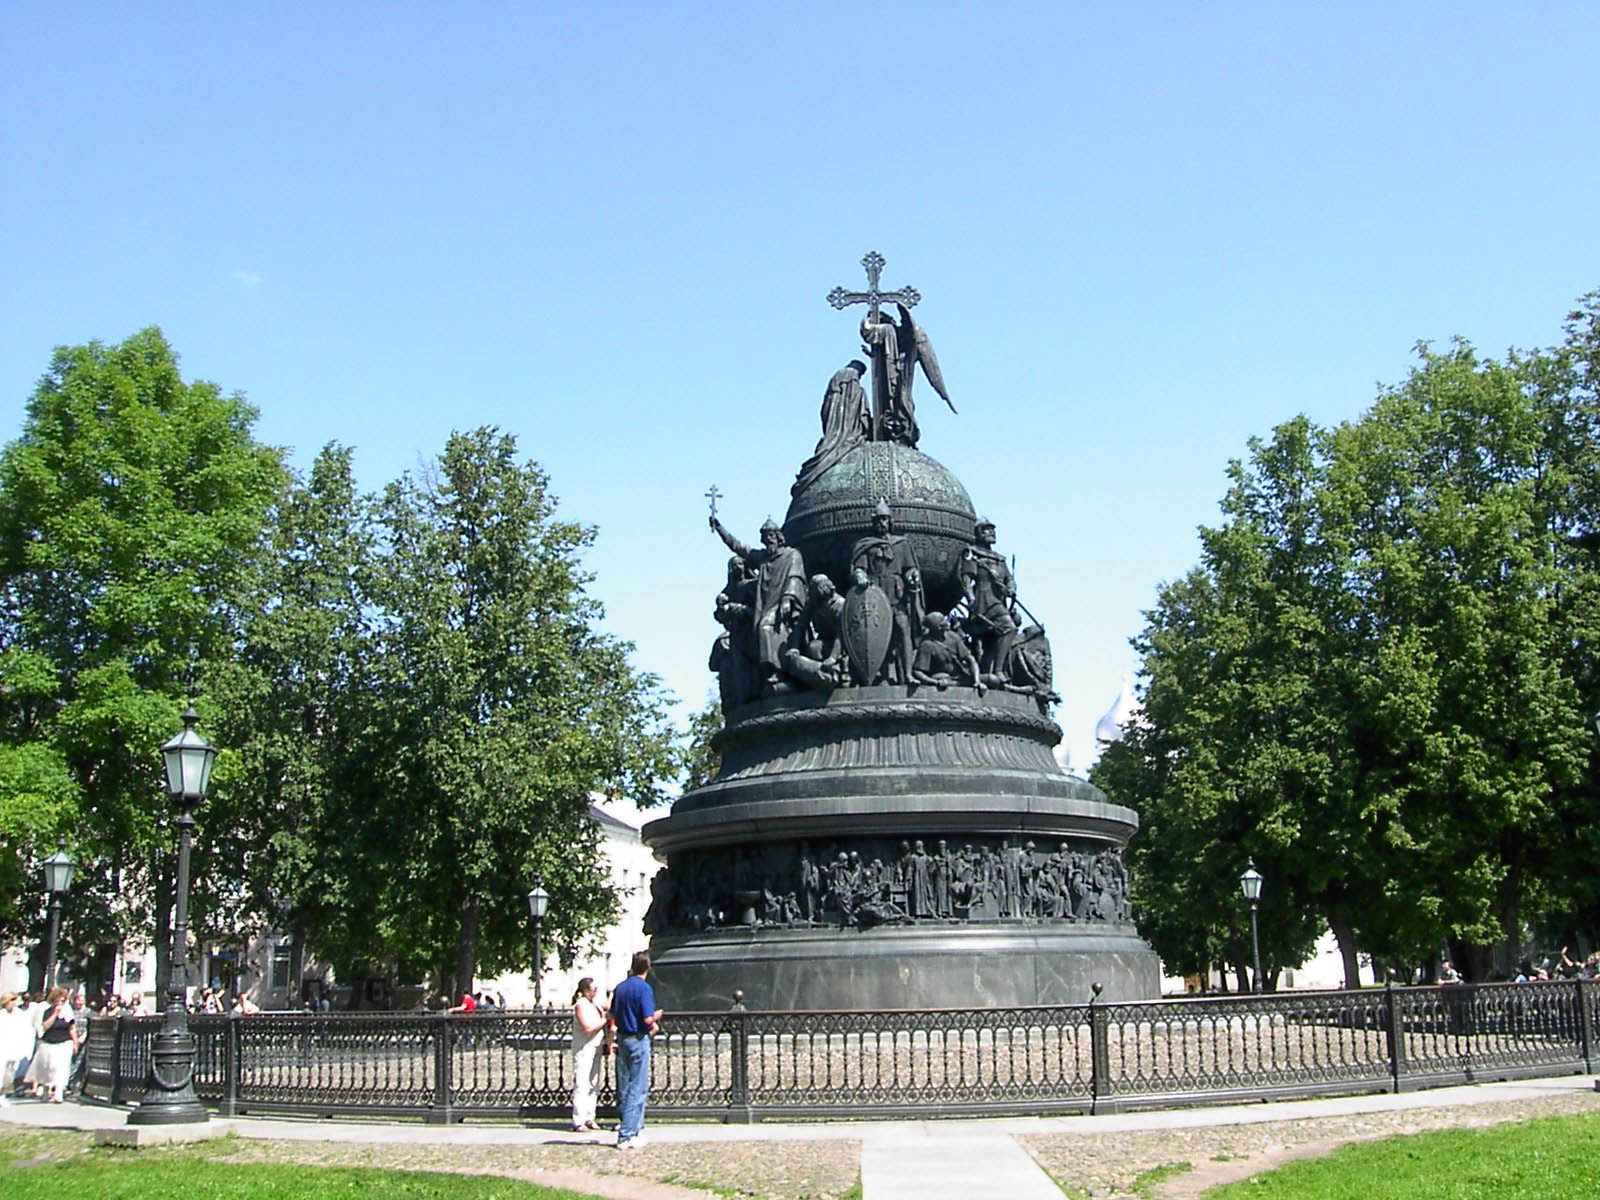 памятники москвы список с описанием